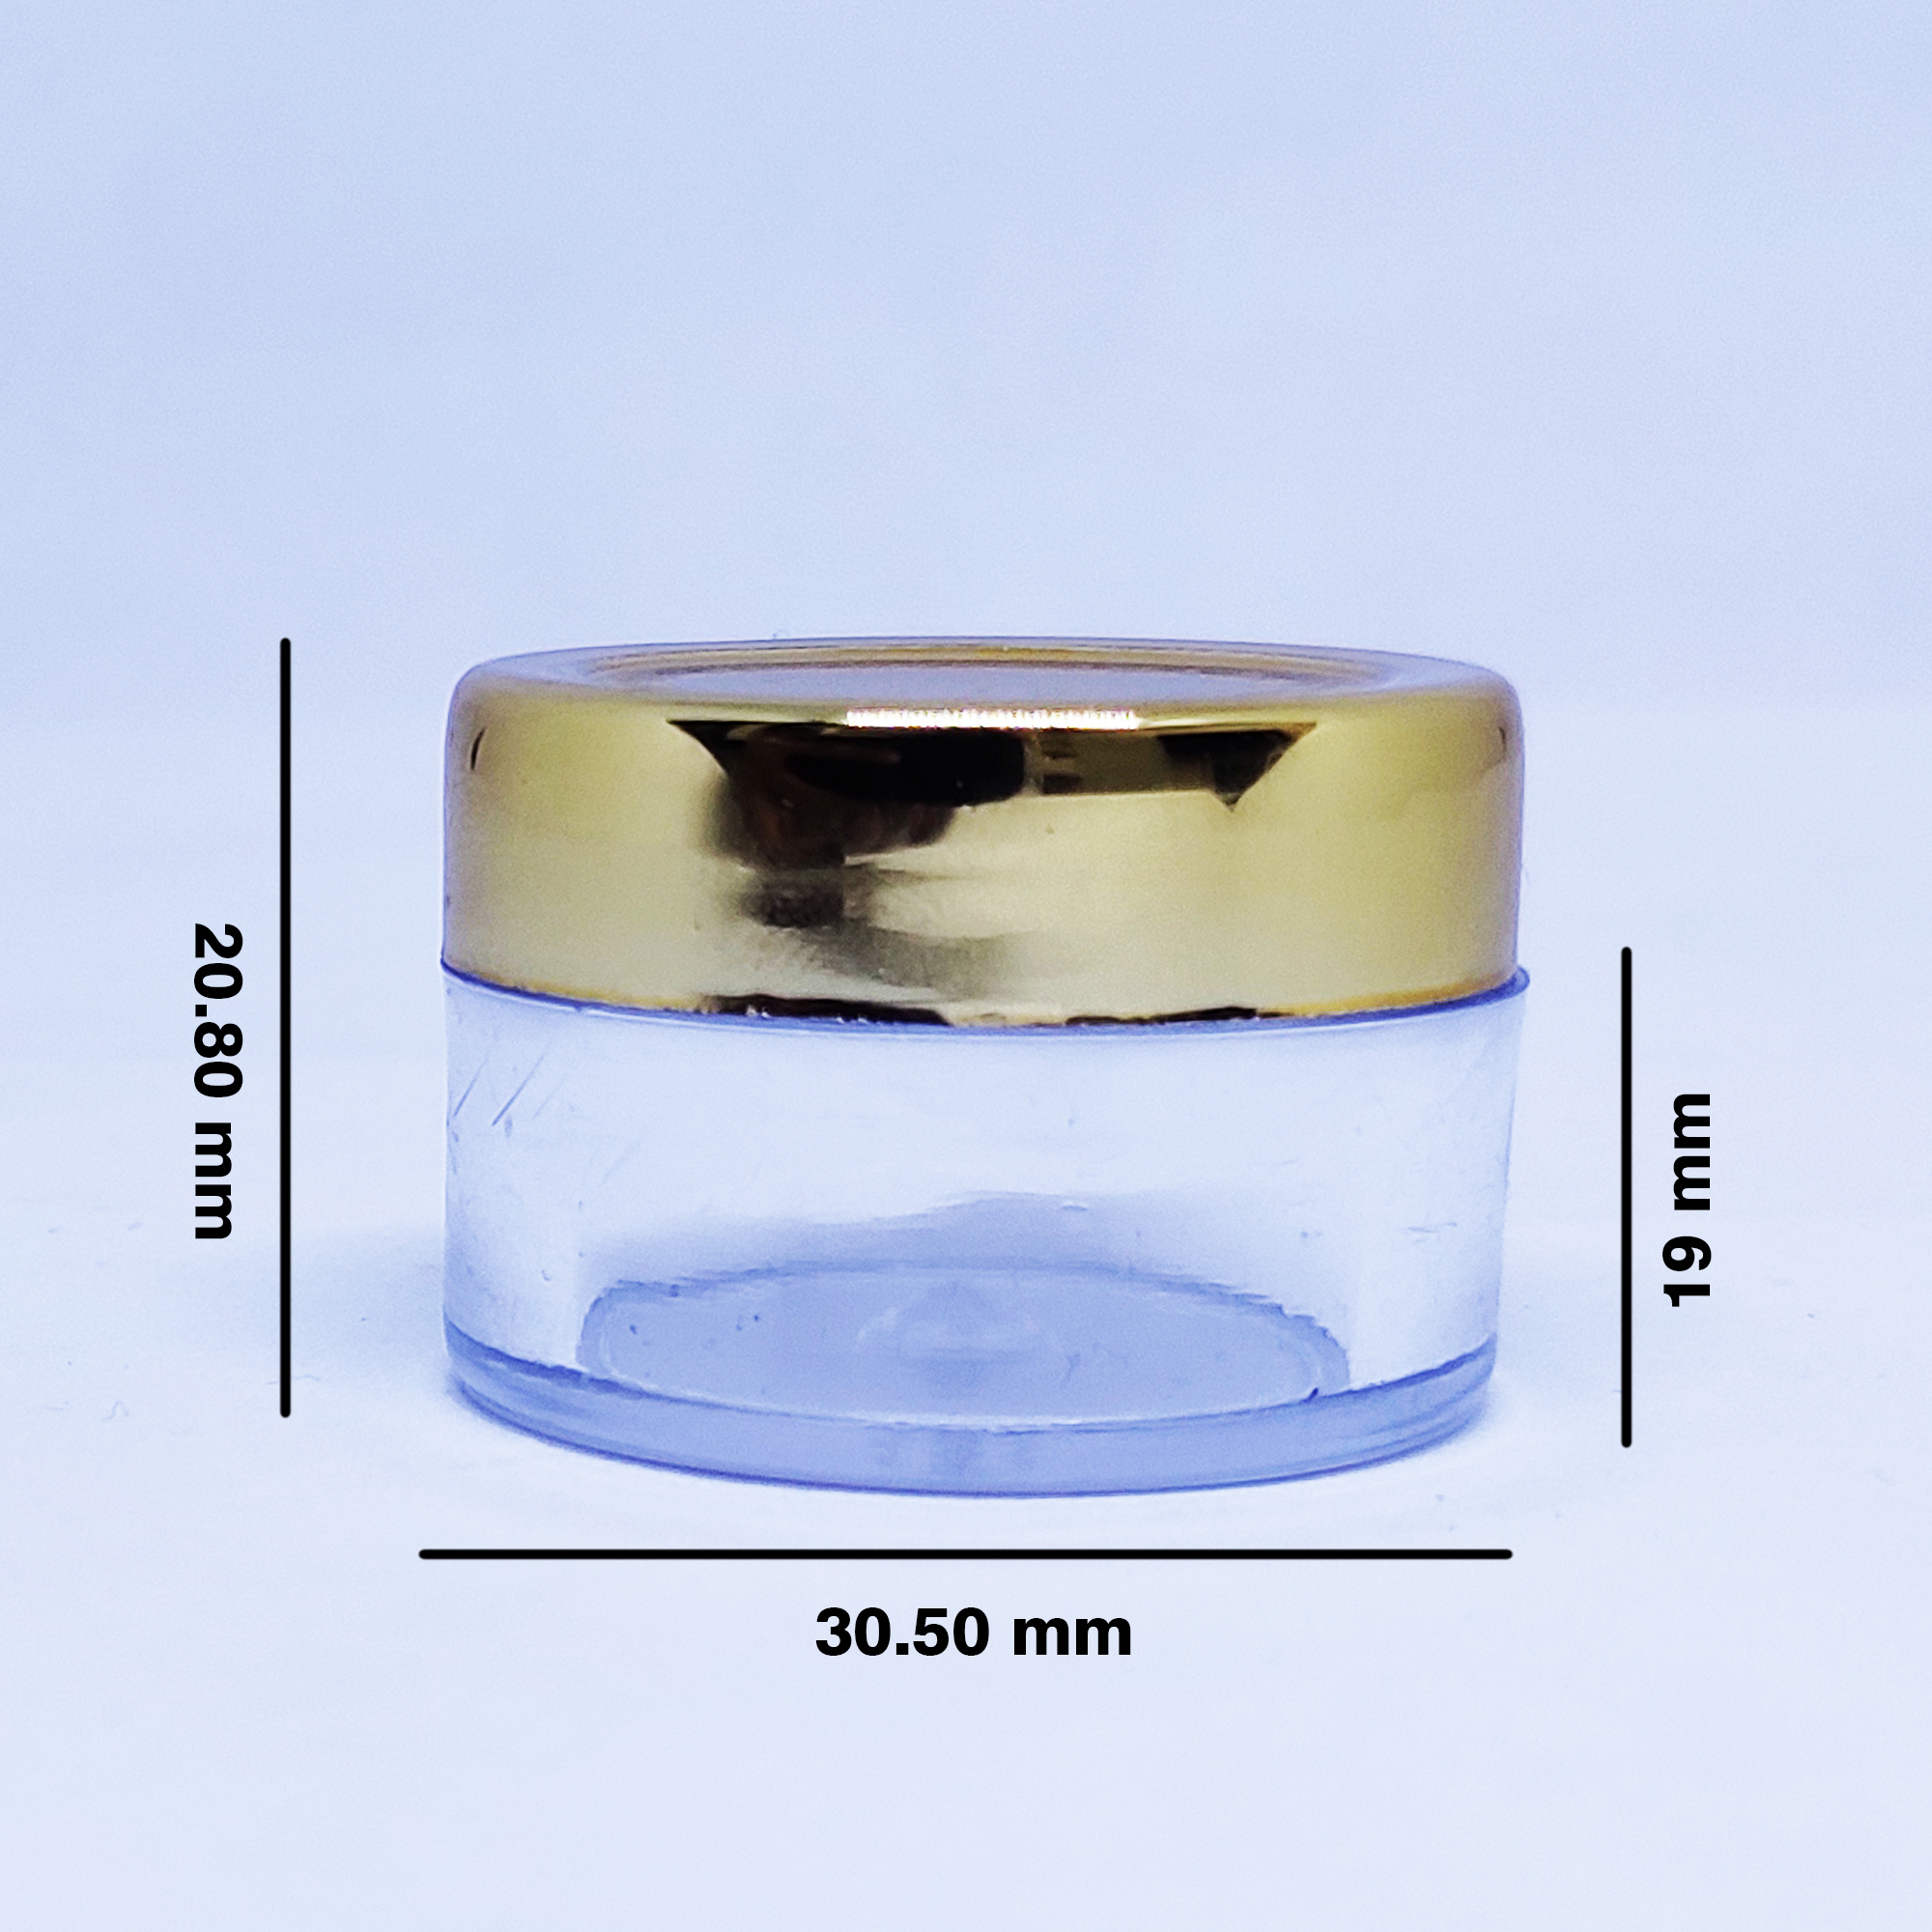 Acrylic Jar or San Jar with Gold Cap